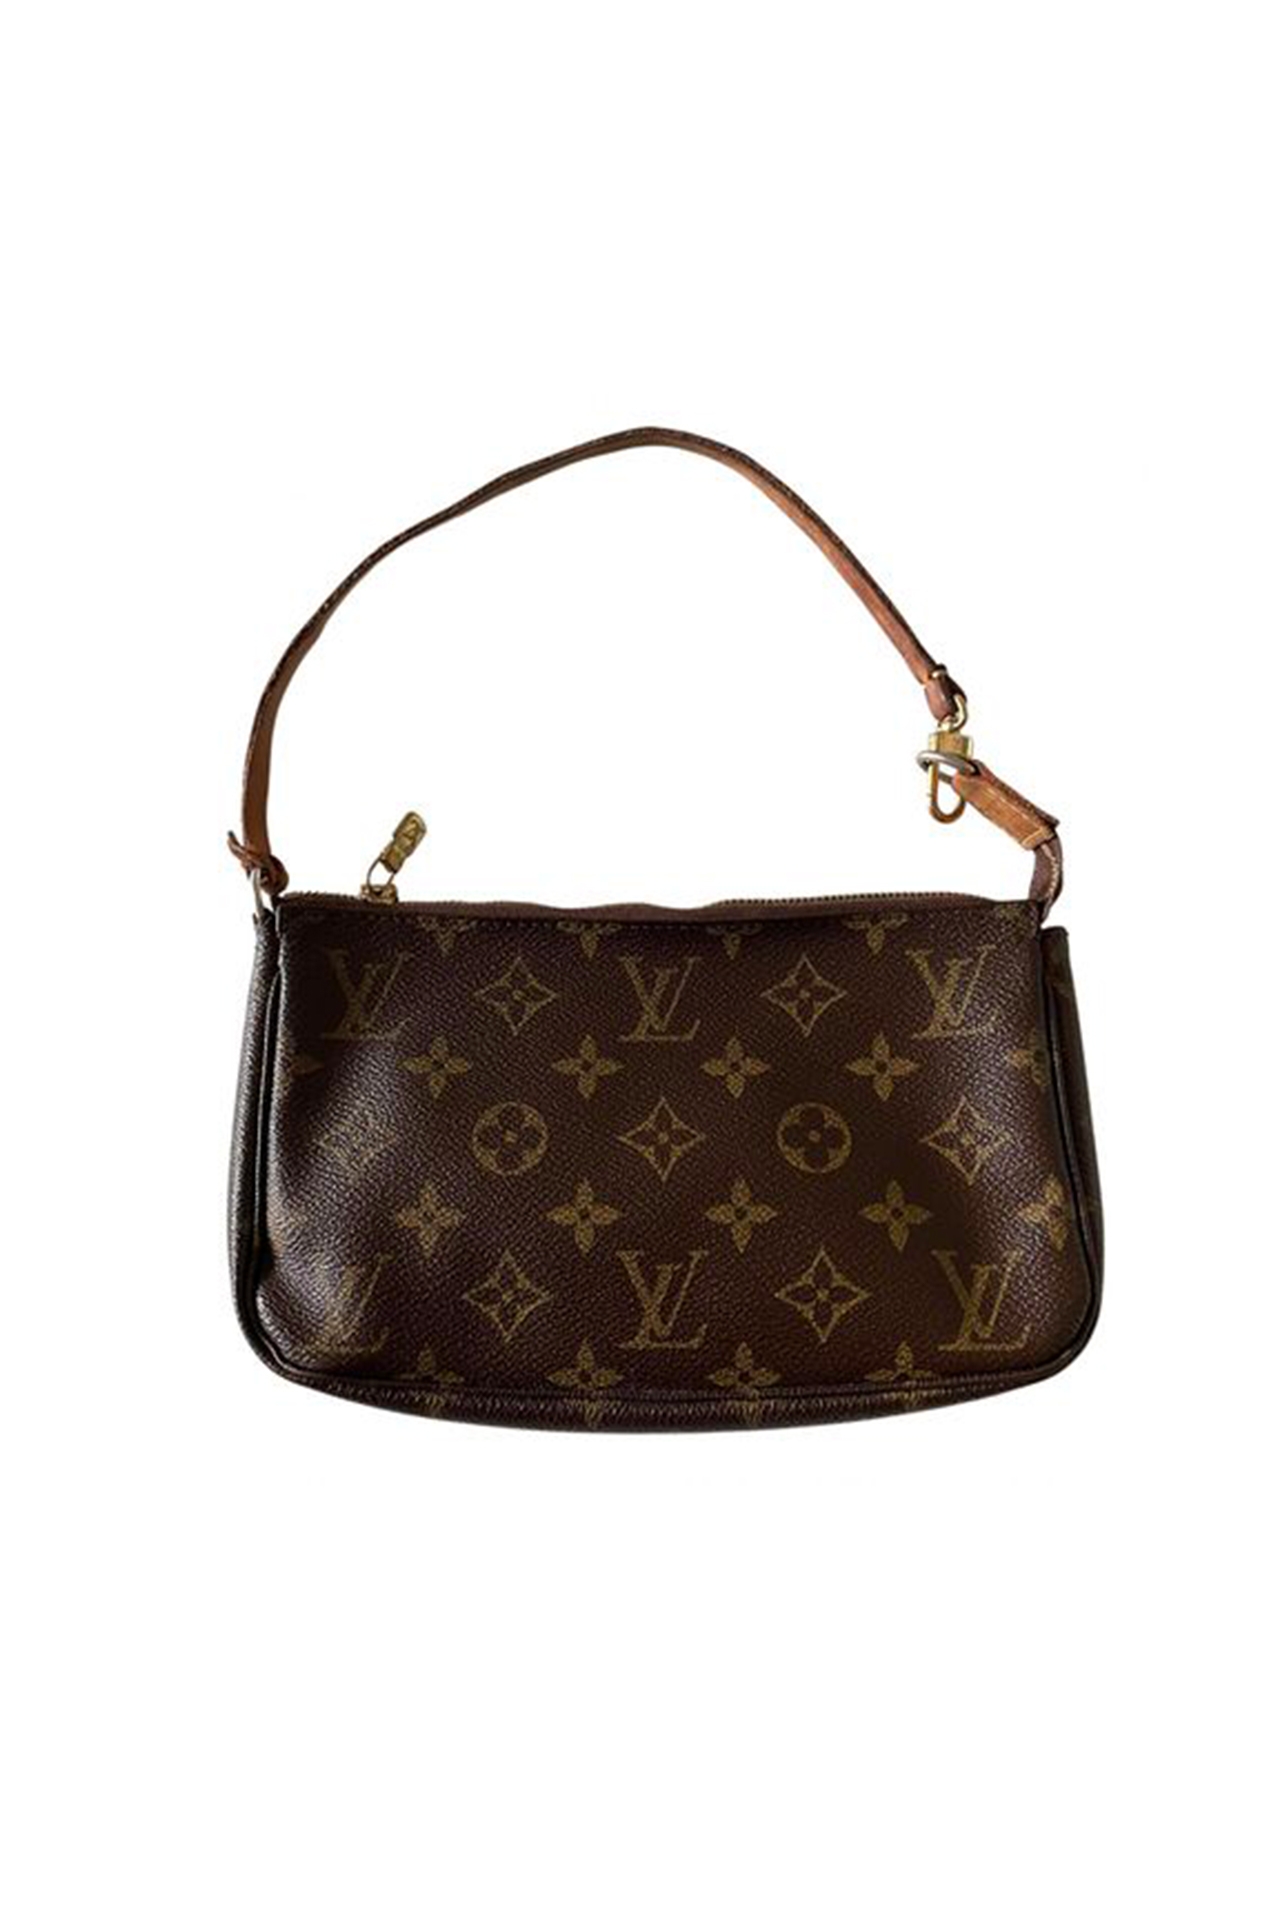 Top Luxury Bag Brands in resale - Vestiaire Collective